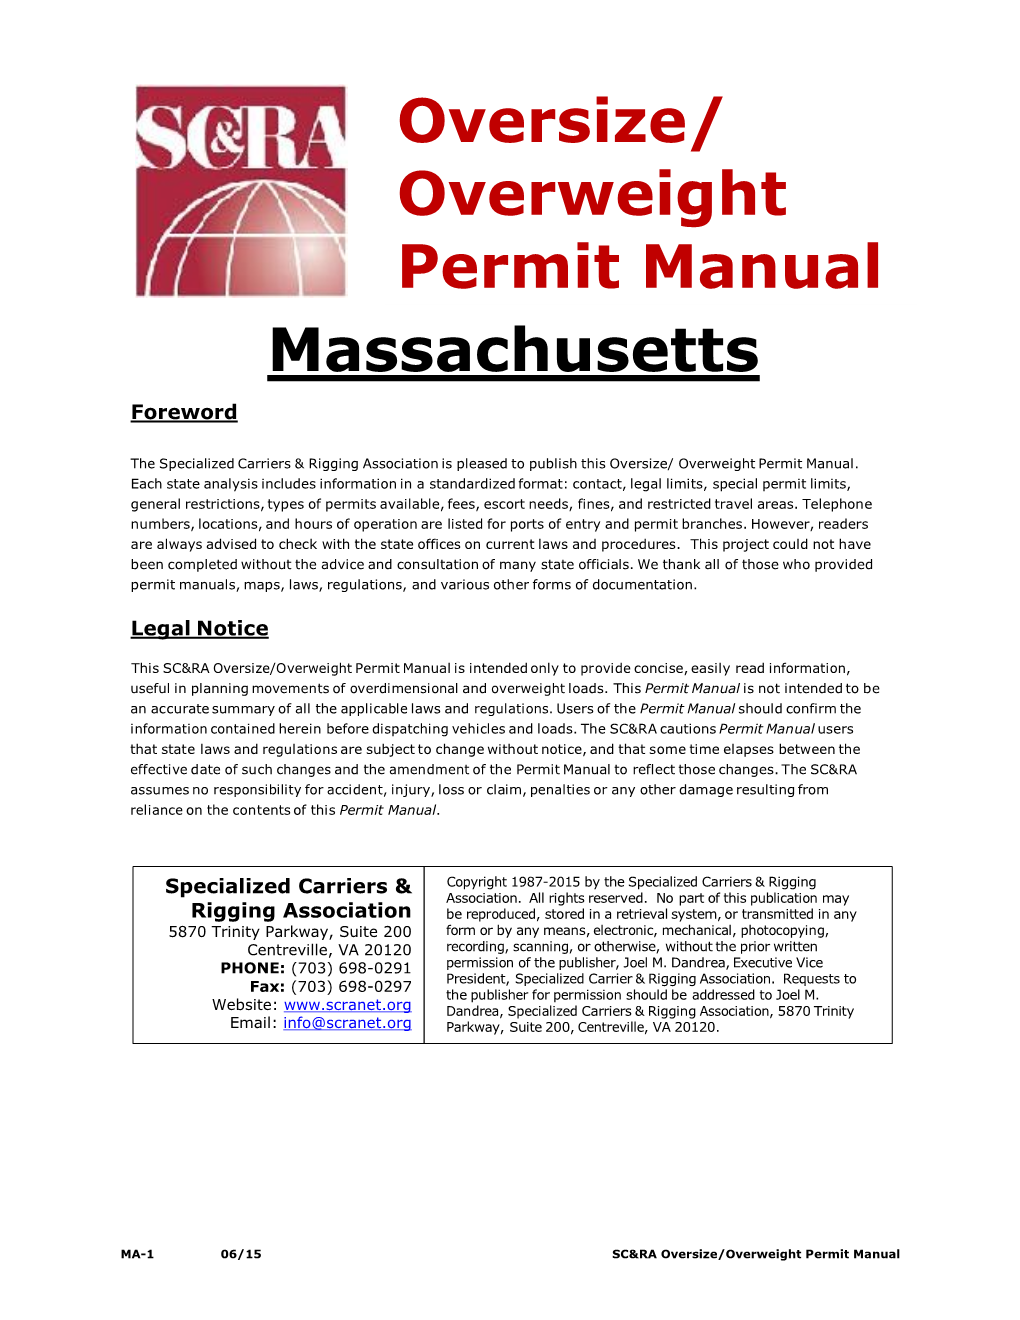 Massachusetts Oversize/ Overweight Permit Manual